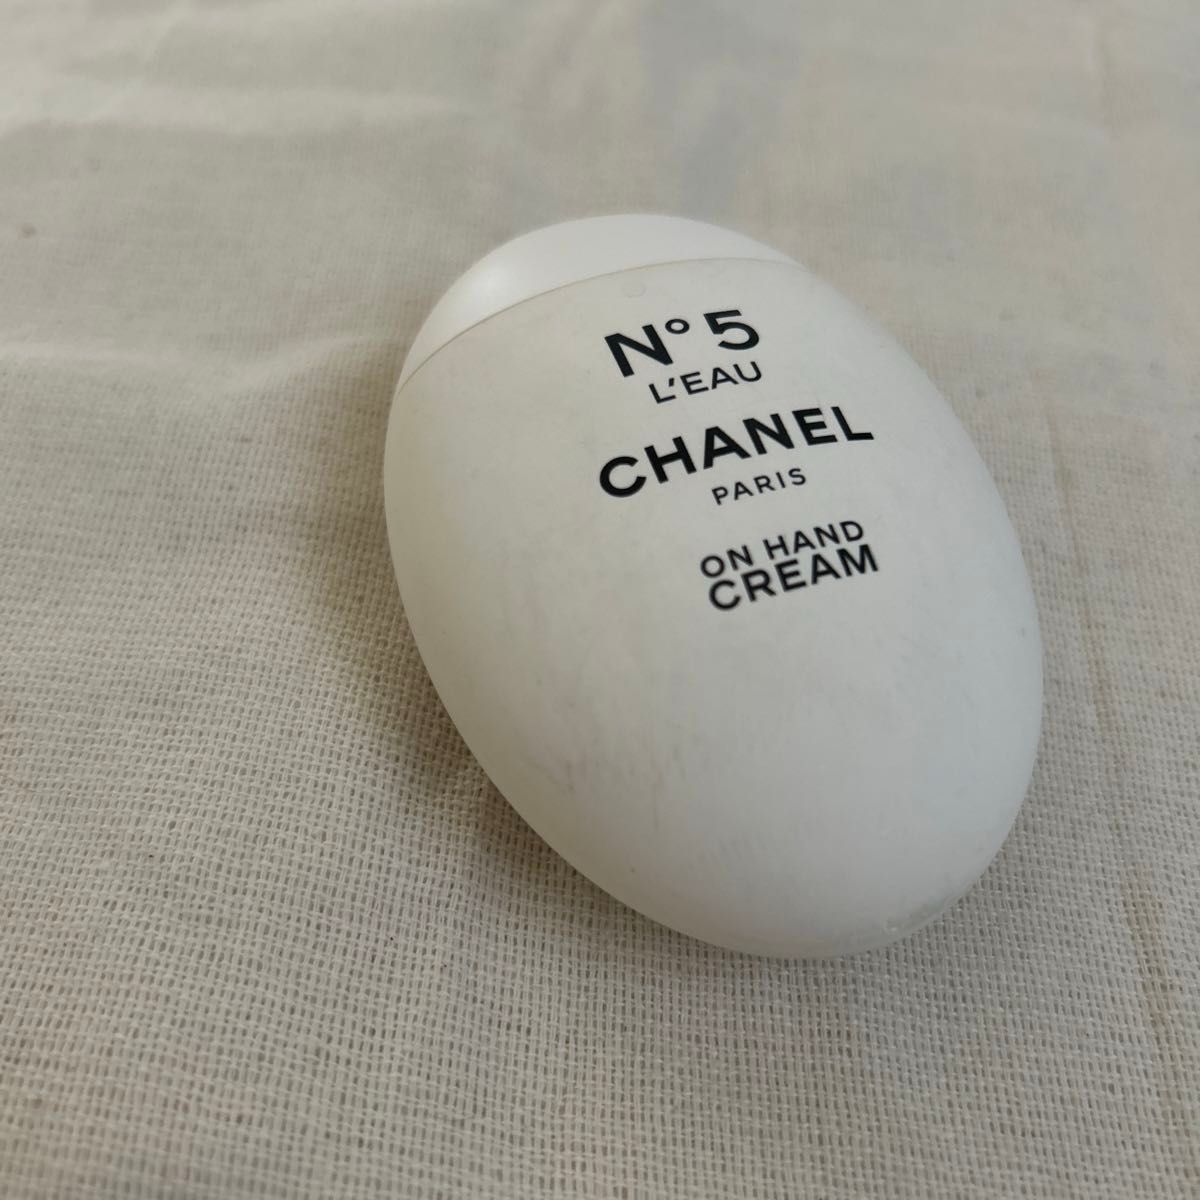 最安値 シャネル CHANEL No.5 ローハンドクリーム 50mlN° 5 LEAU ON HAND CREAM